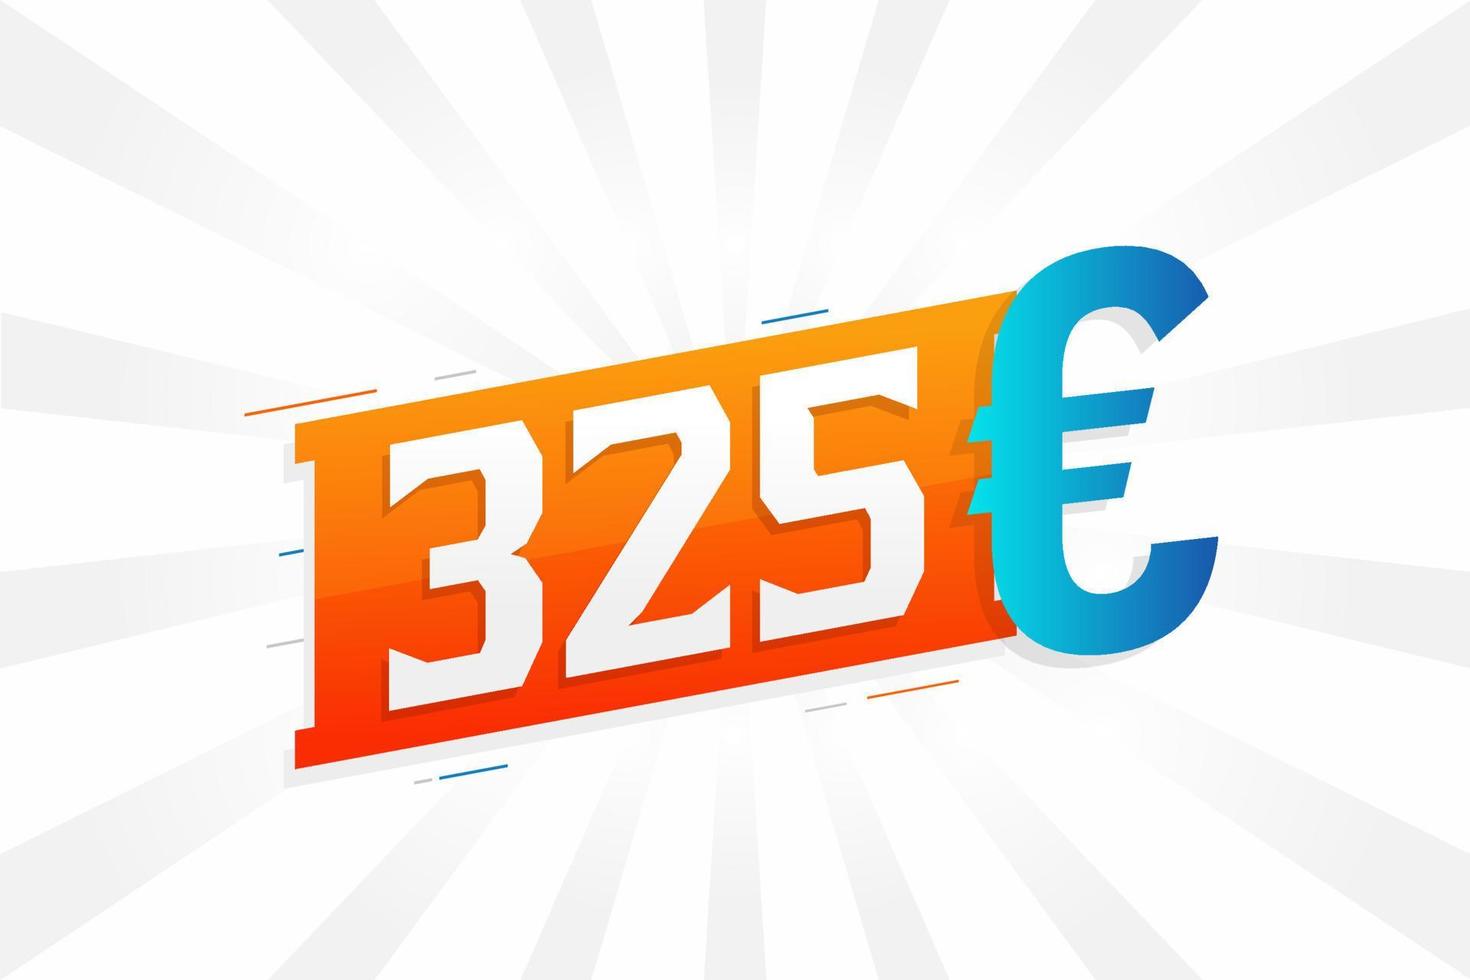 Símbolo de texto vectorial de moneda de 325 euros. 325 euros unión europea dinero stock vector